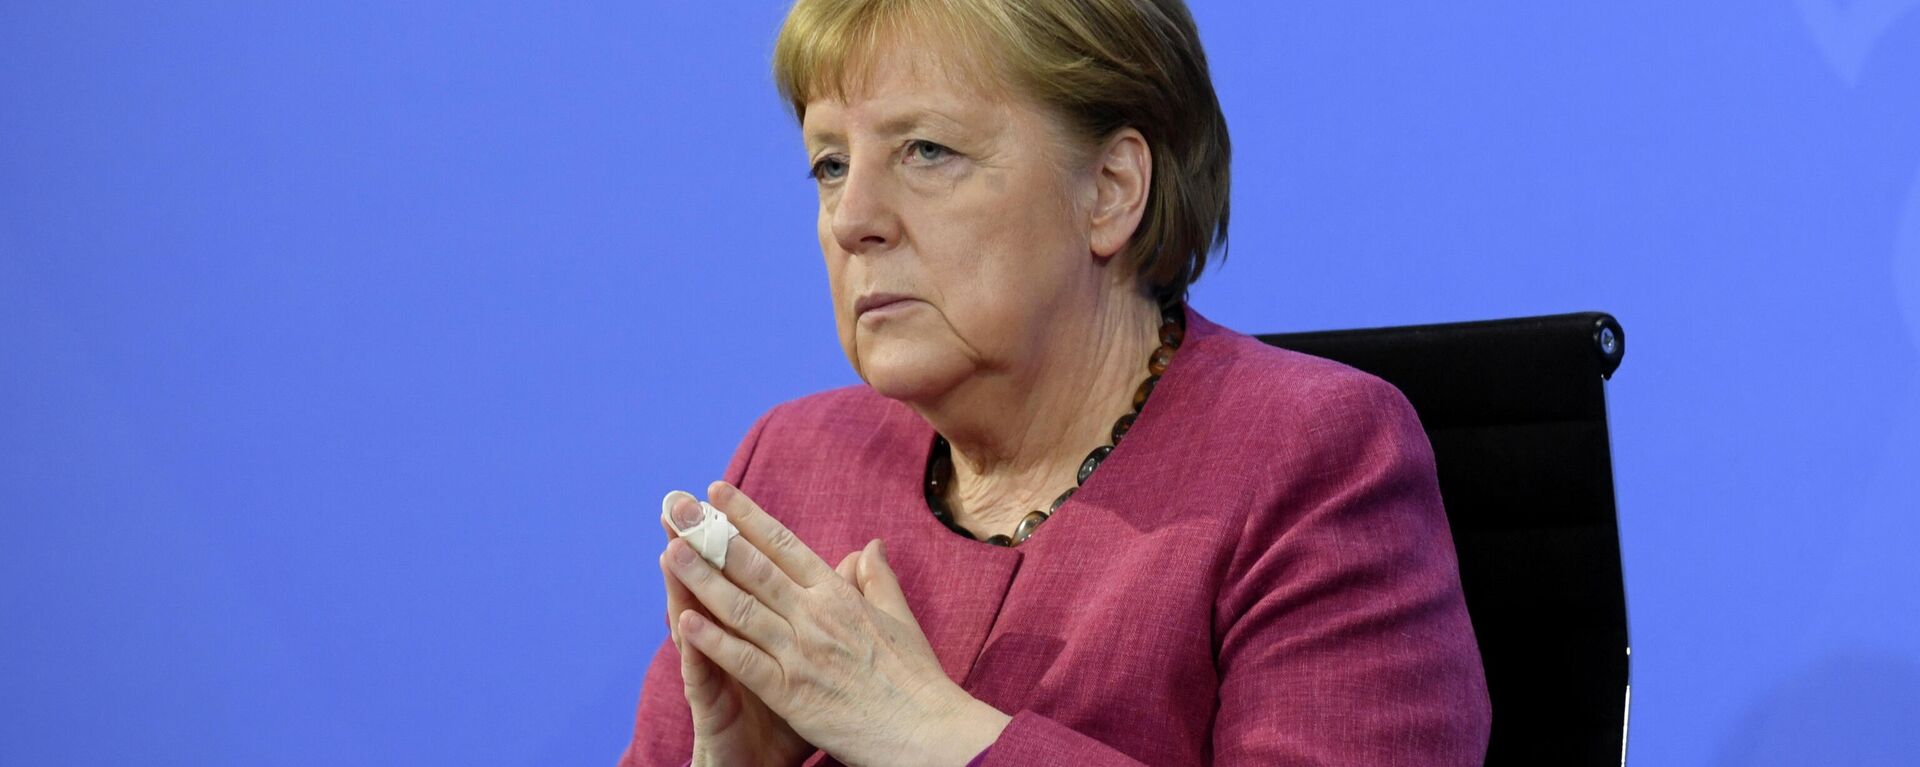 Angela Merkel, canciller de Alemania - Sputnik Mundo, 1920, 19.06.2021